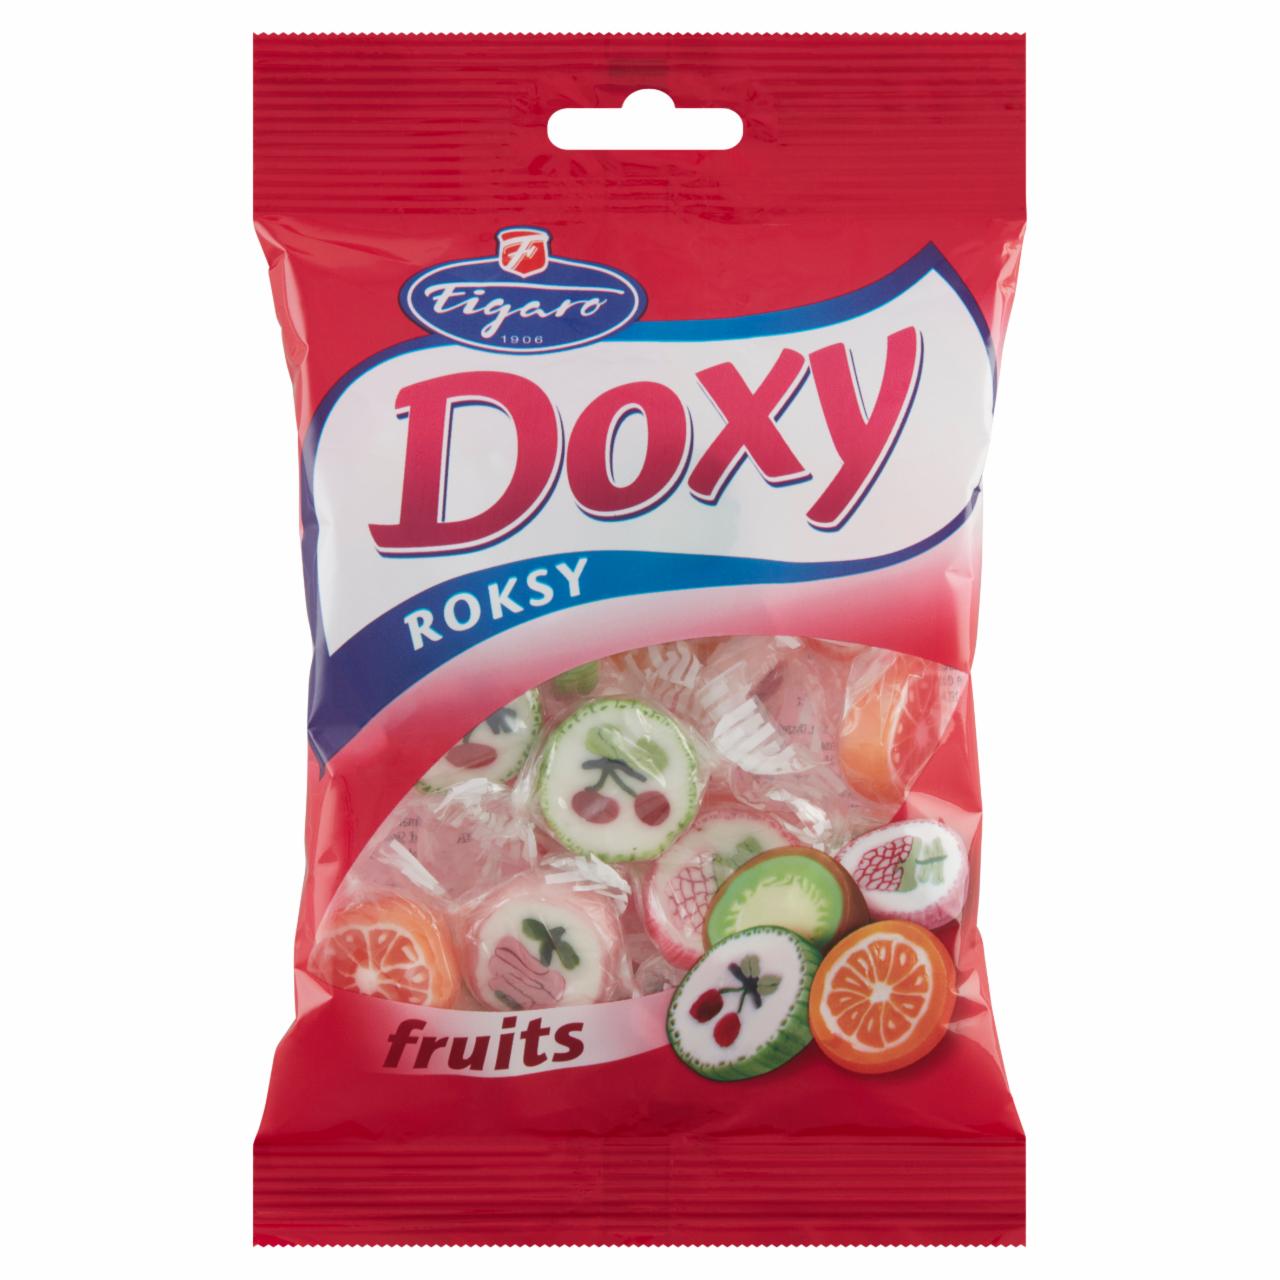 Képek - Figaro Doxy Roksy Fruits vegyes gyümölcs ízű cukorkák 90 g